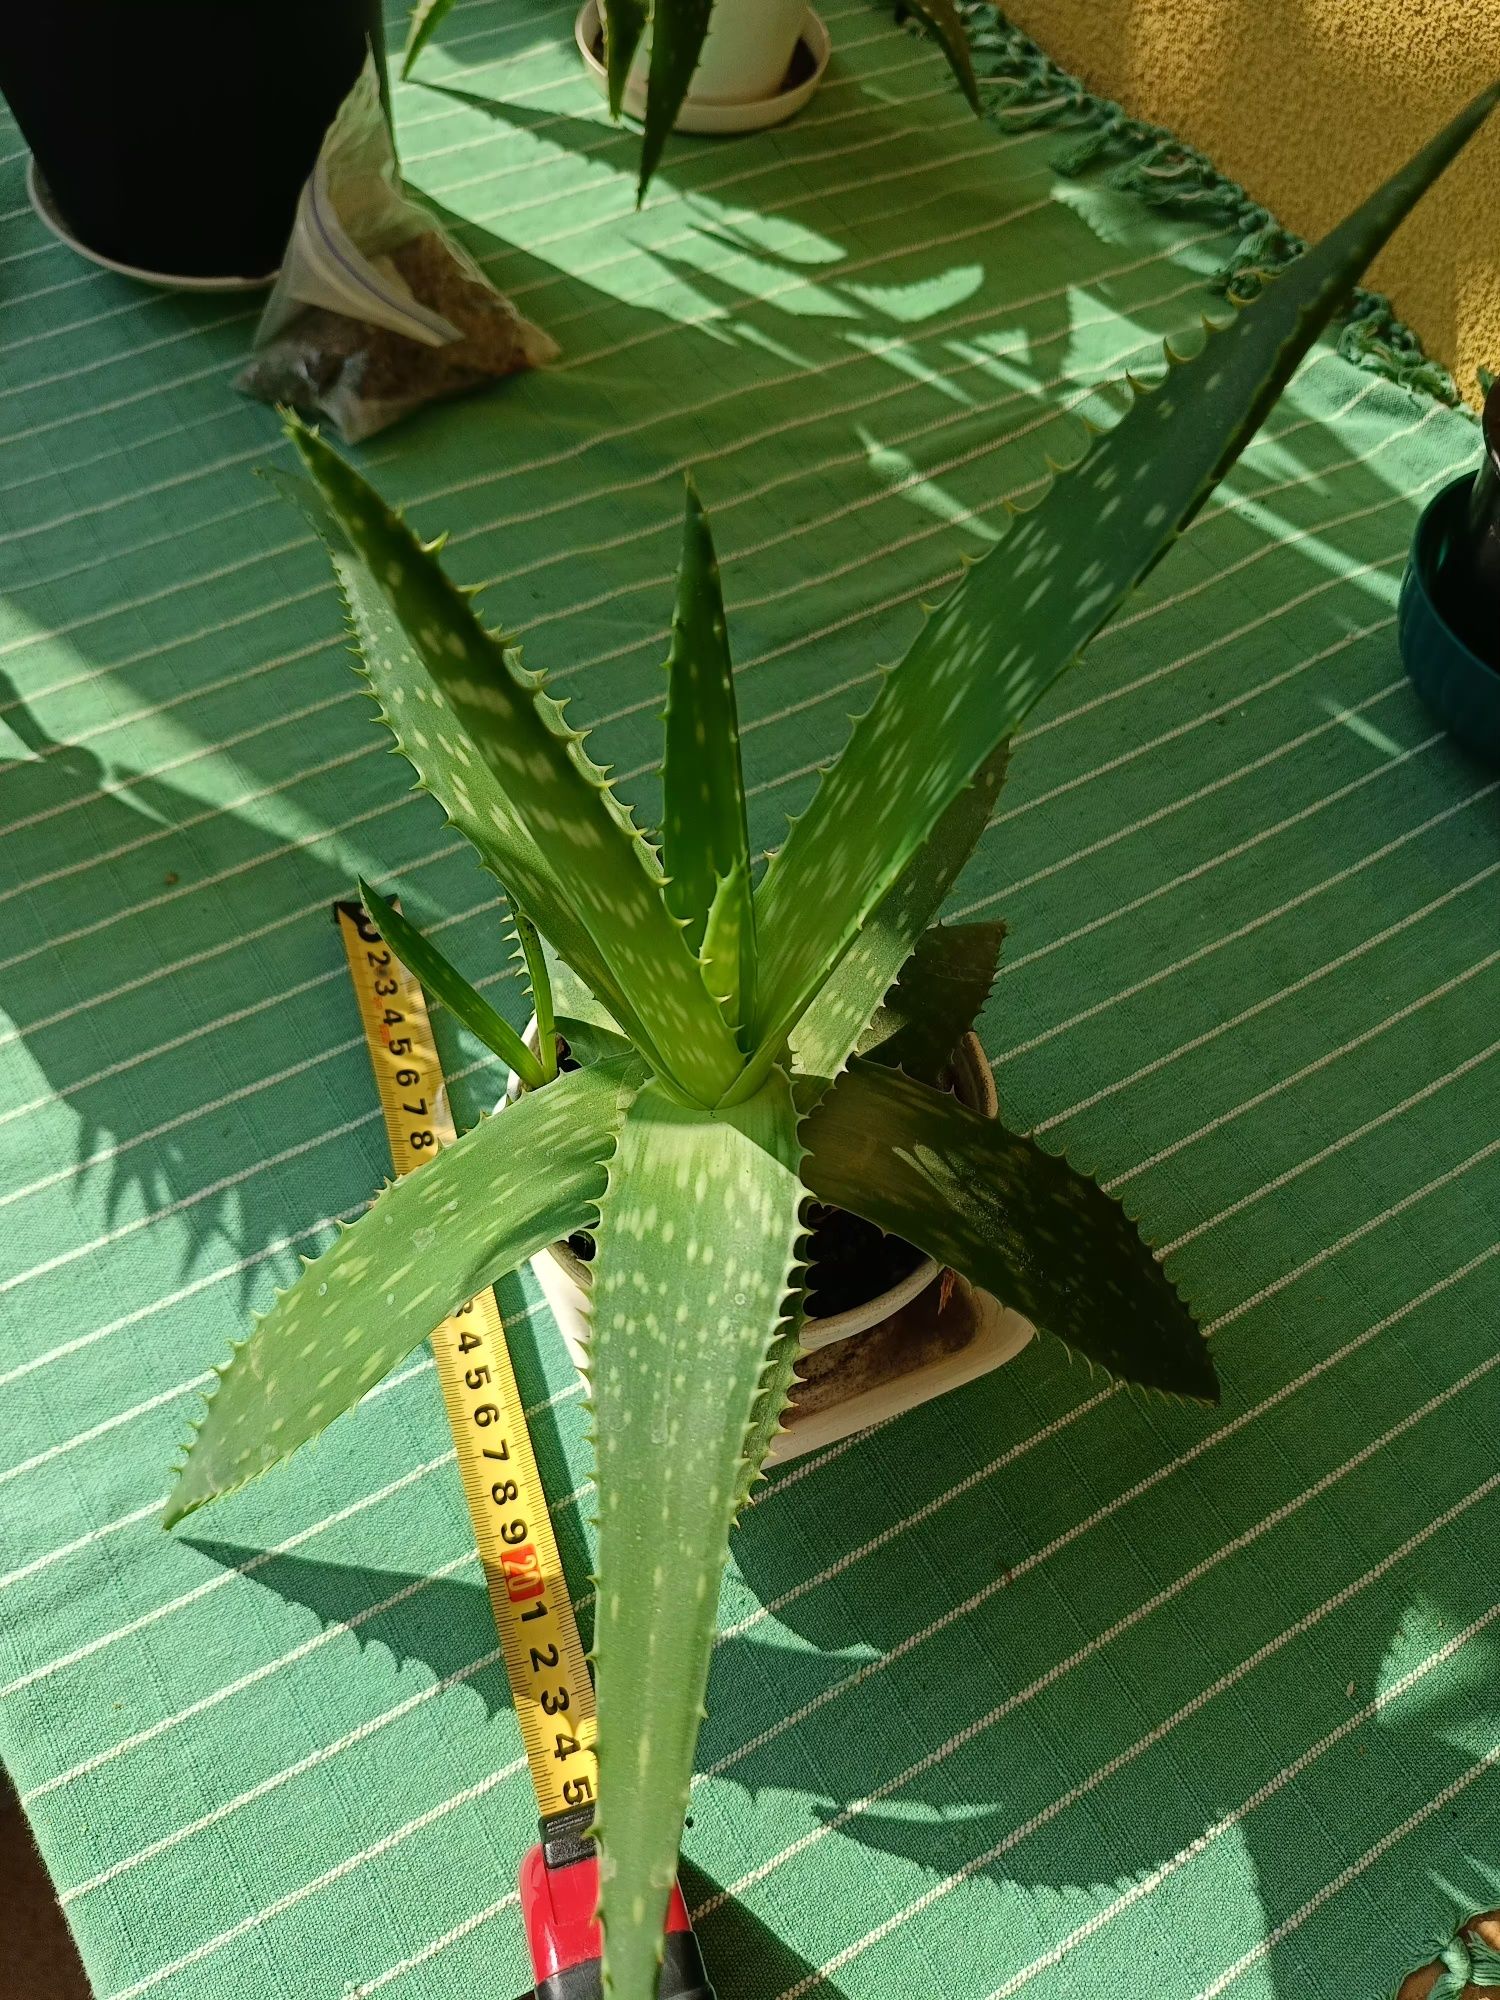 Алое мильний Aloe Saponaria , може квітнути